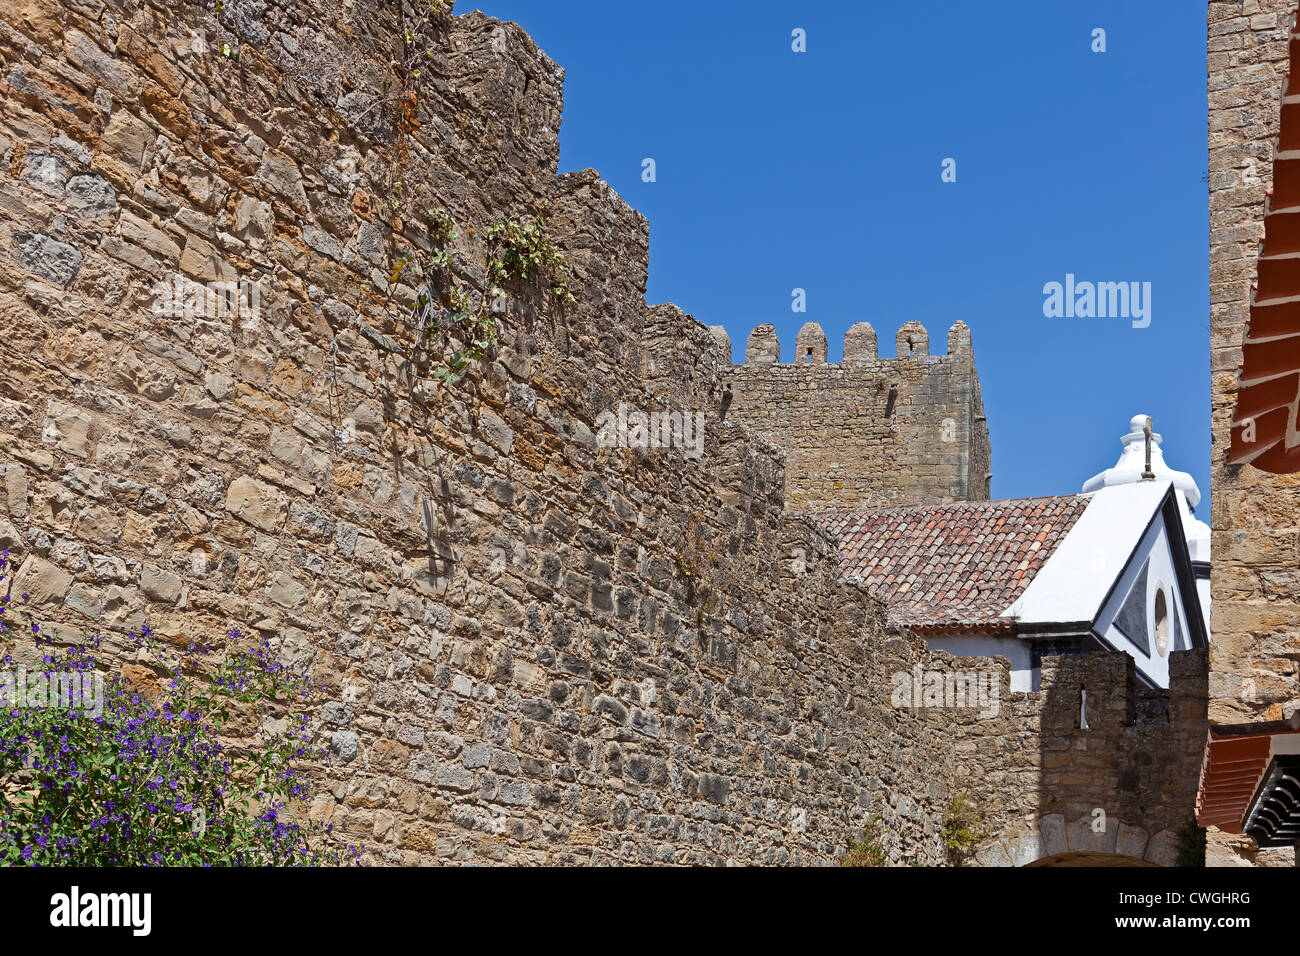 Óbidos pared de castillo fortificado. Obidos es un pueblo medieval muy bien conservado aún dentro de las paredes del castillo Foto de stock